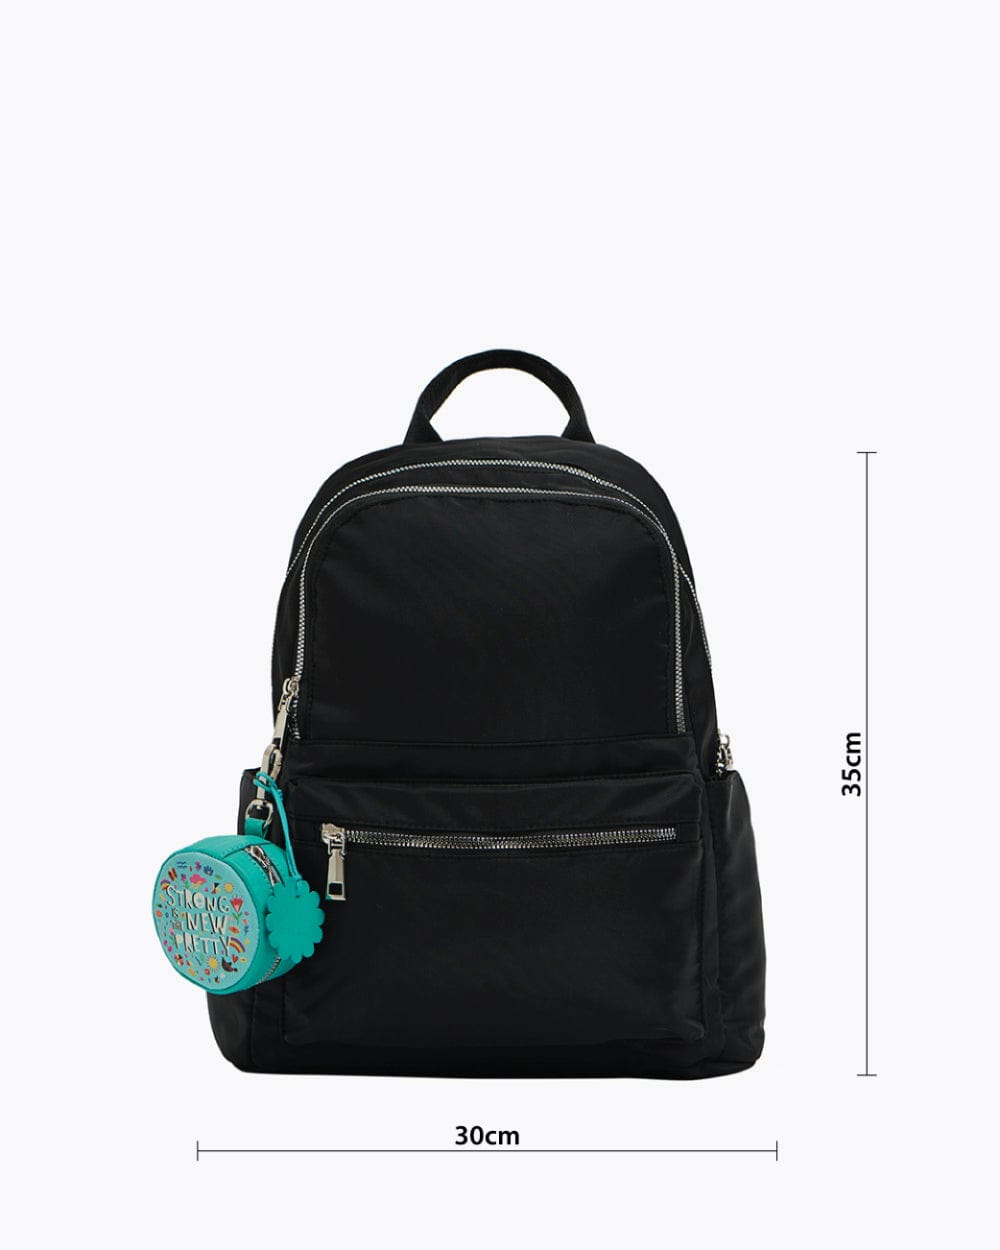 Chumbak Daily Hustle Backpack - Black